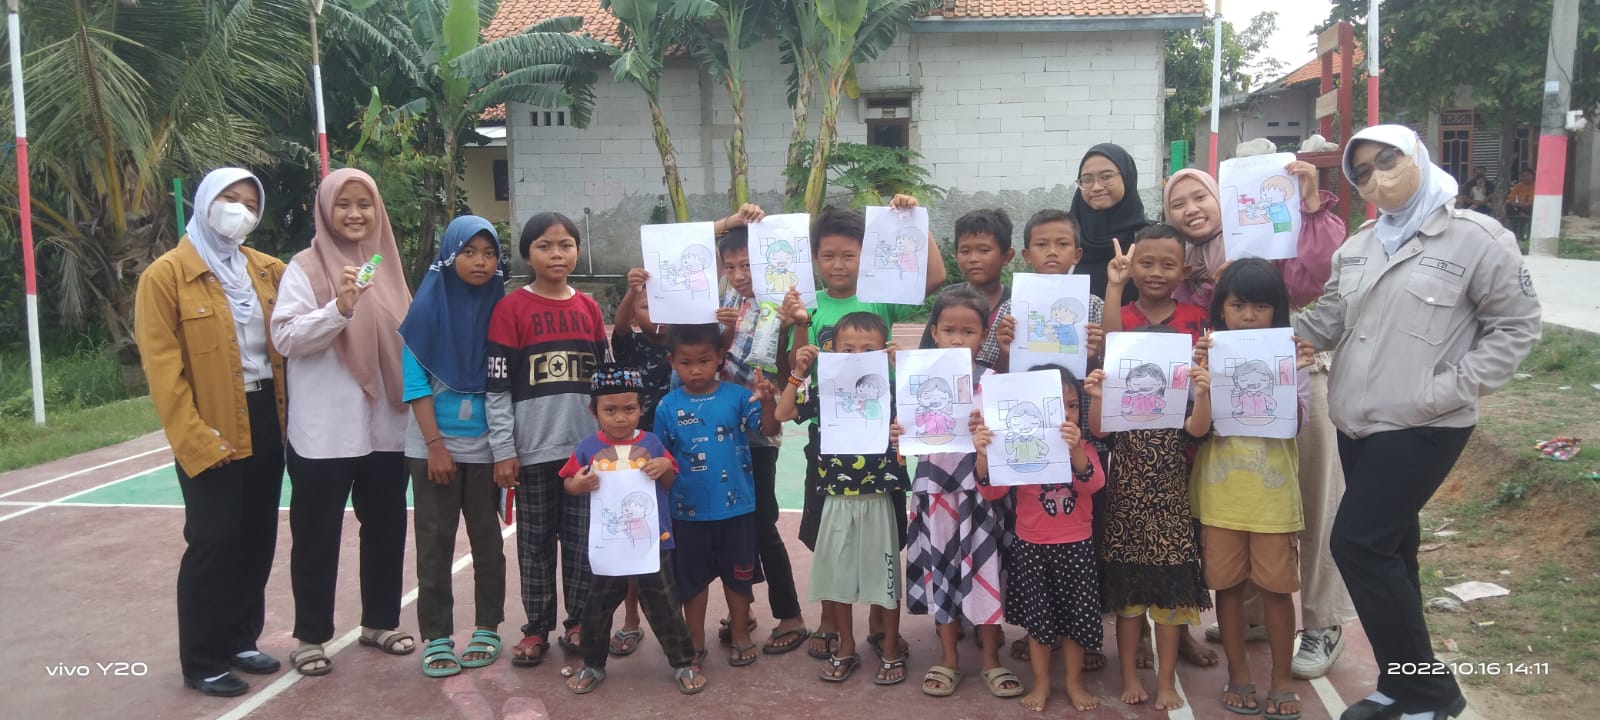 Perduli pendidikan dan kesehatan masyarakat terdampak TPA Jatiwaringin, Mahasiswa adakan ekspedisi Buka Buku M